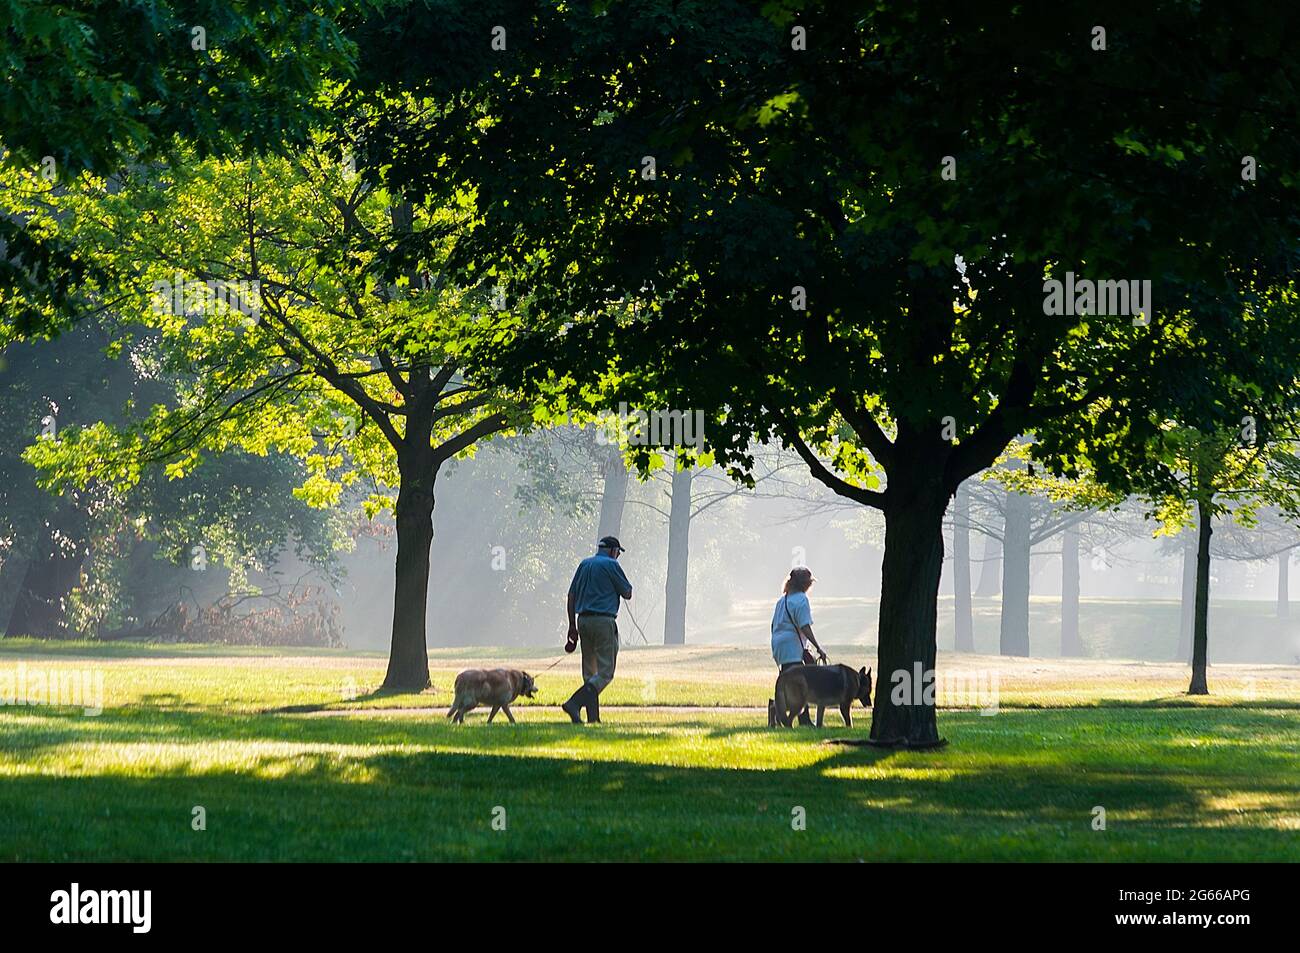 Deux aînés, un homme et une femme, avec leurs chiens dans un joli parc, Ontario, Canada. Le brouillard léger crée une toile de fond aérée pour les arbres denses. Banque D'Images